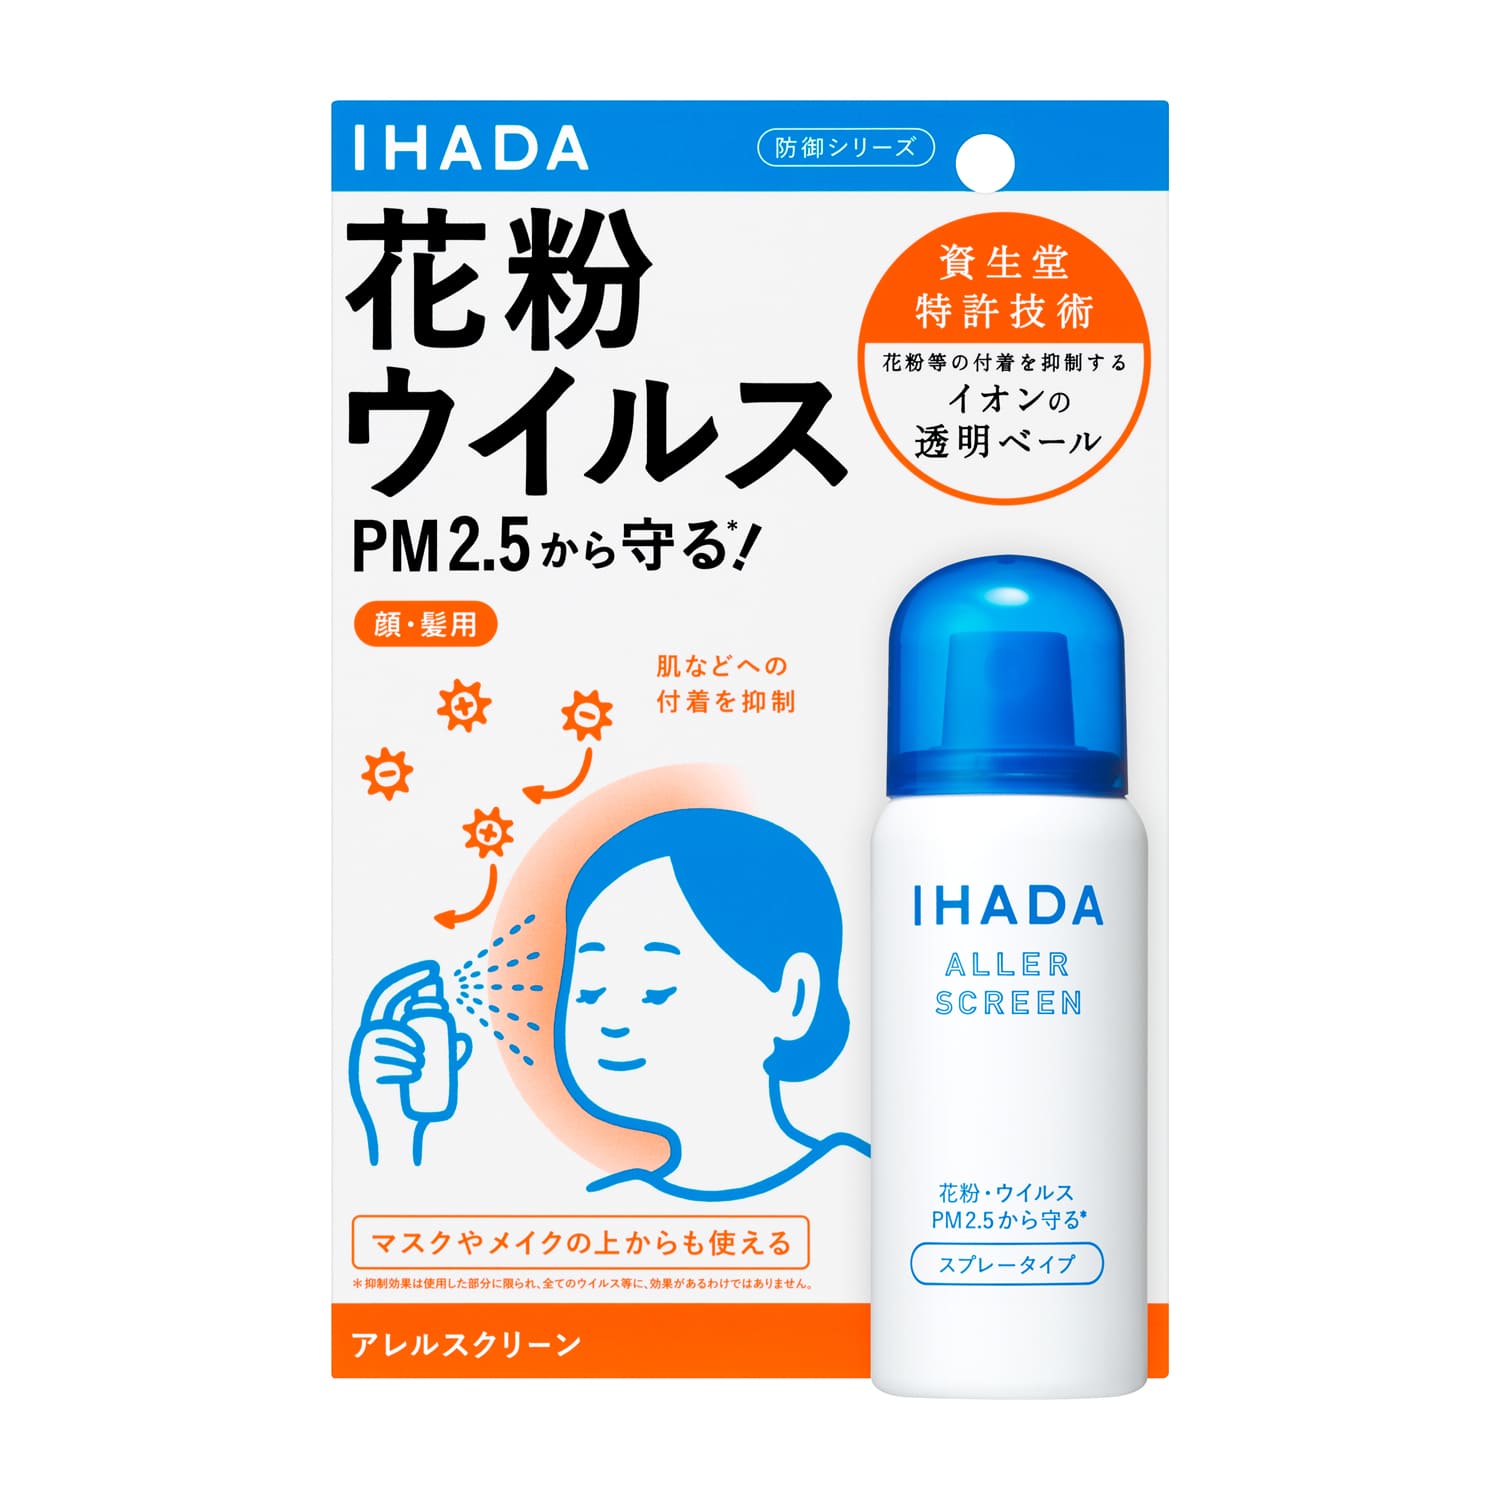 資生堂 イハダ アレルスクリーン EX 50g IHADA 花粉 PM2.5 ウイルス 花粉防御剤